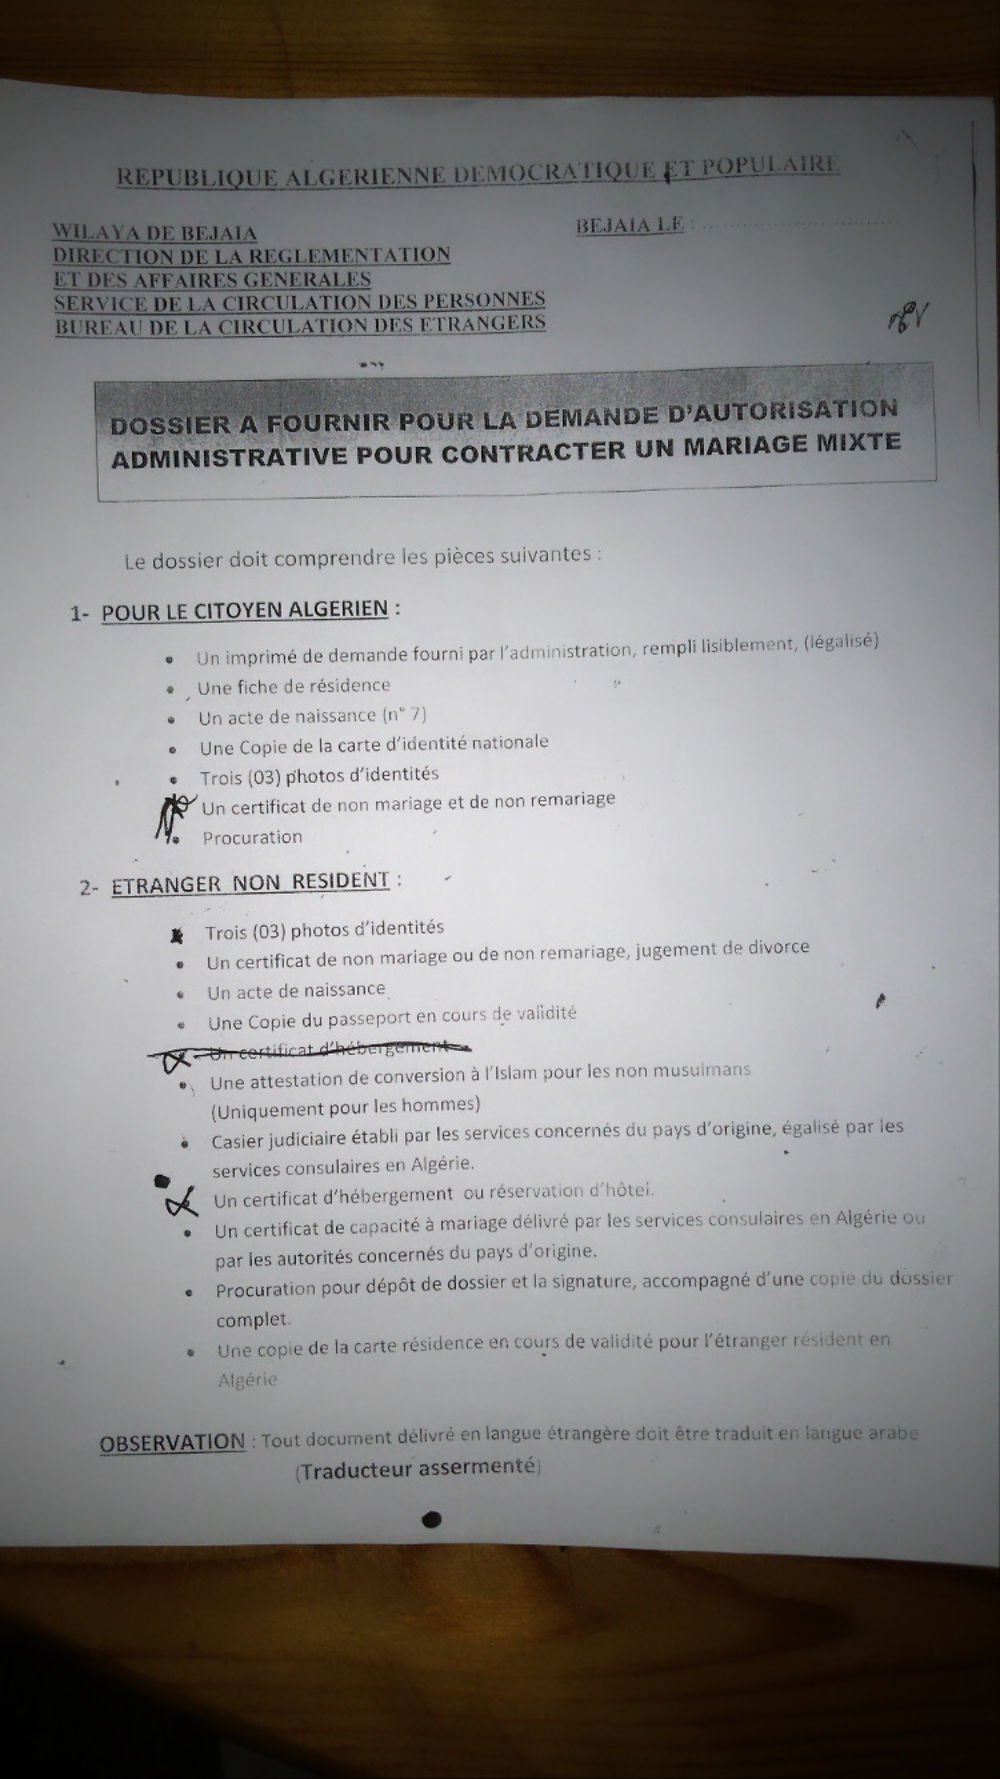 Re: Certificat de capacité à mariage (ccam) - formalités pour se marier en Algerie - Bizek06